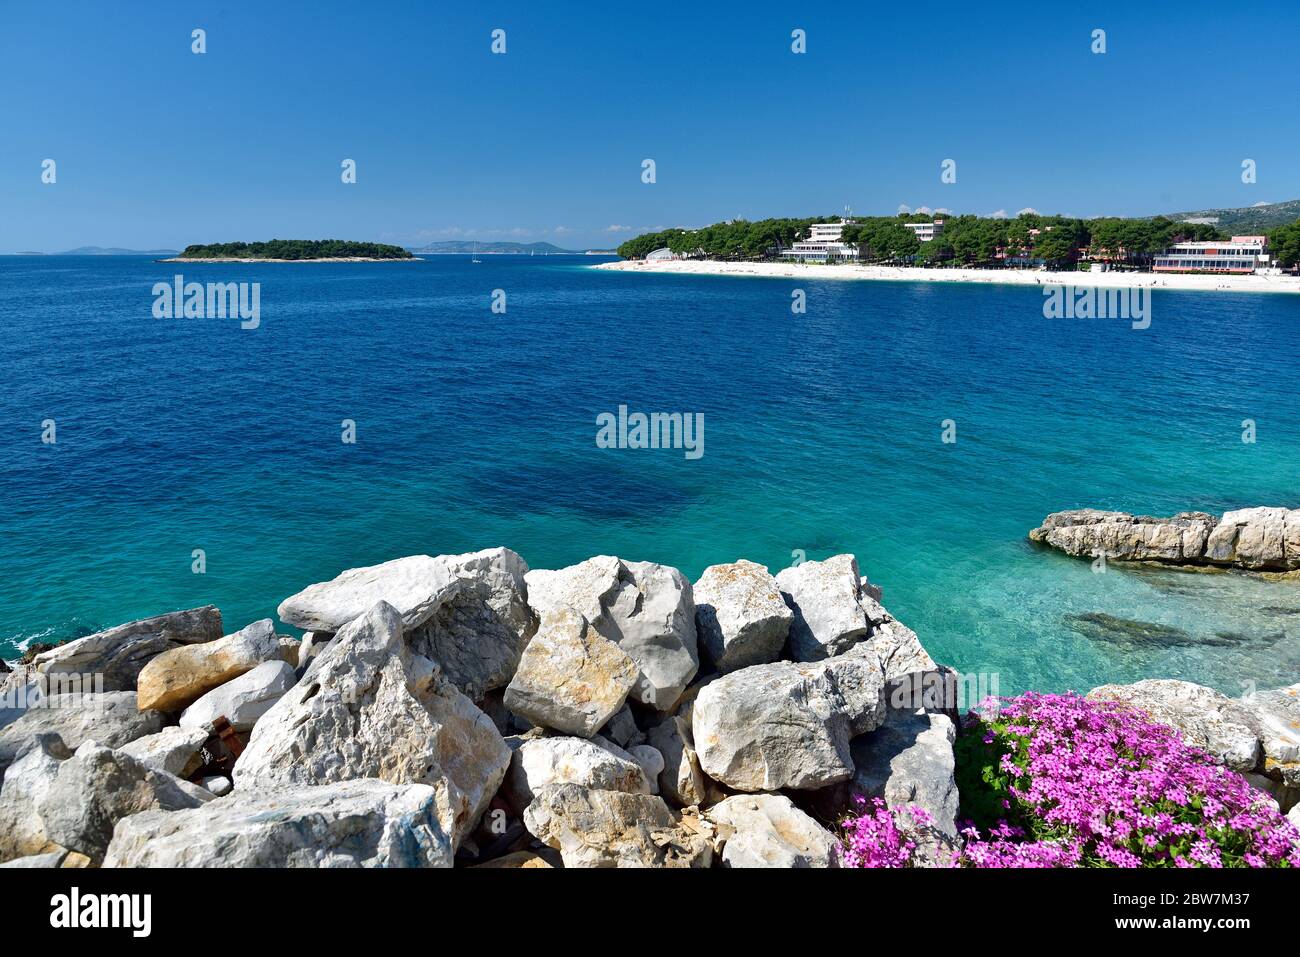 La plage de sable blanc dans la célèbre et belle ville de Primosten en Dalmatie - destination touristique populaire en Dalmatie. Croatie Banque D'Images